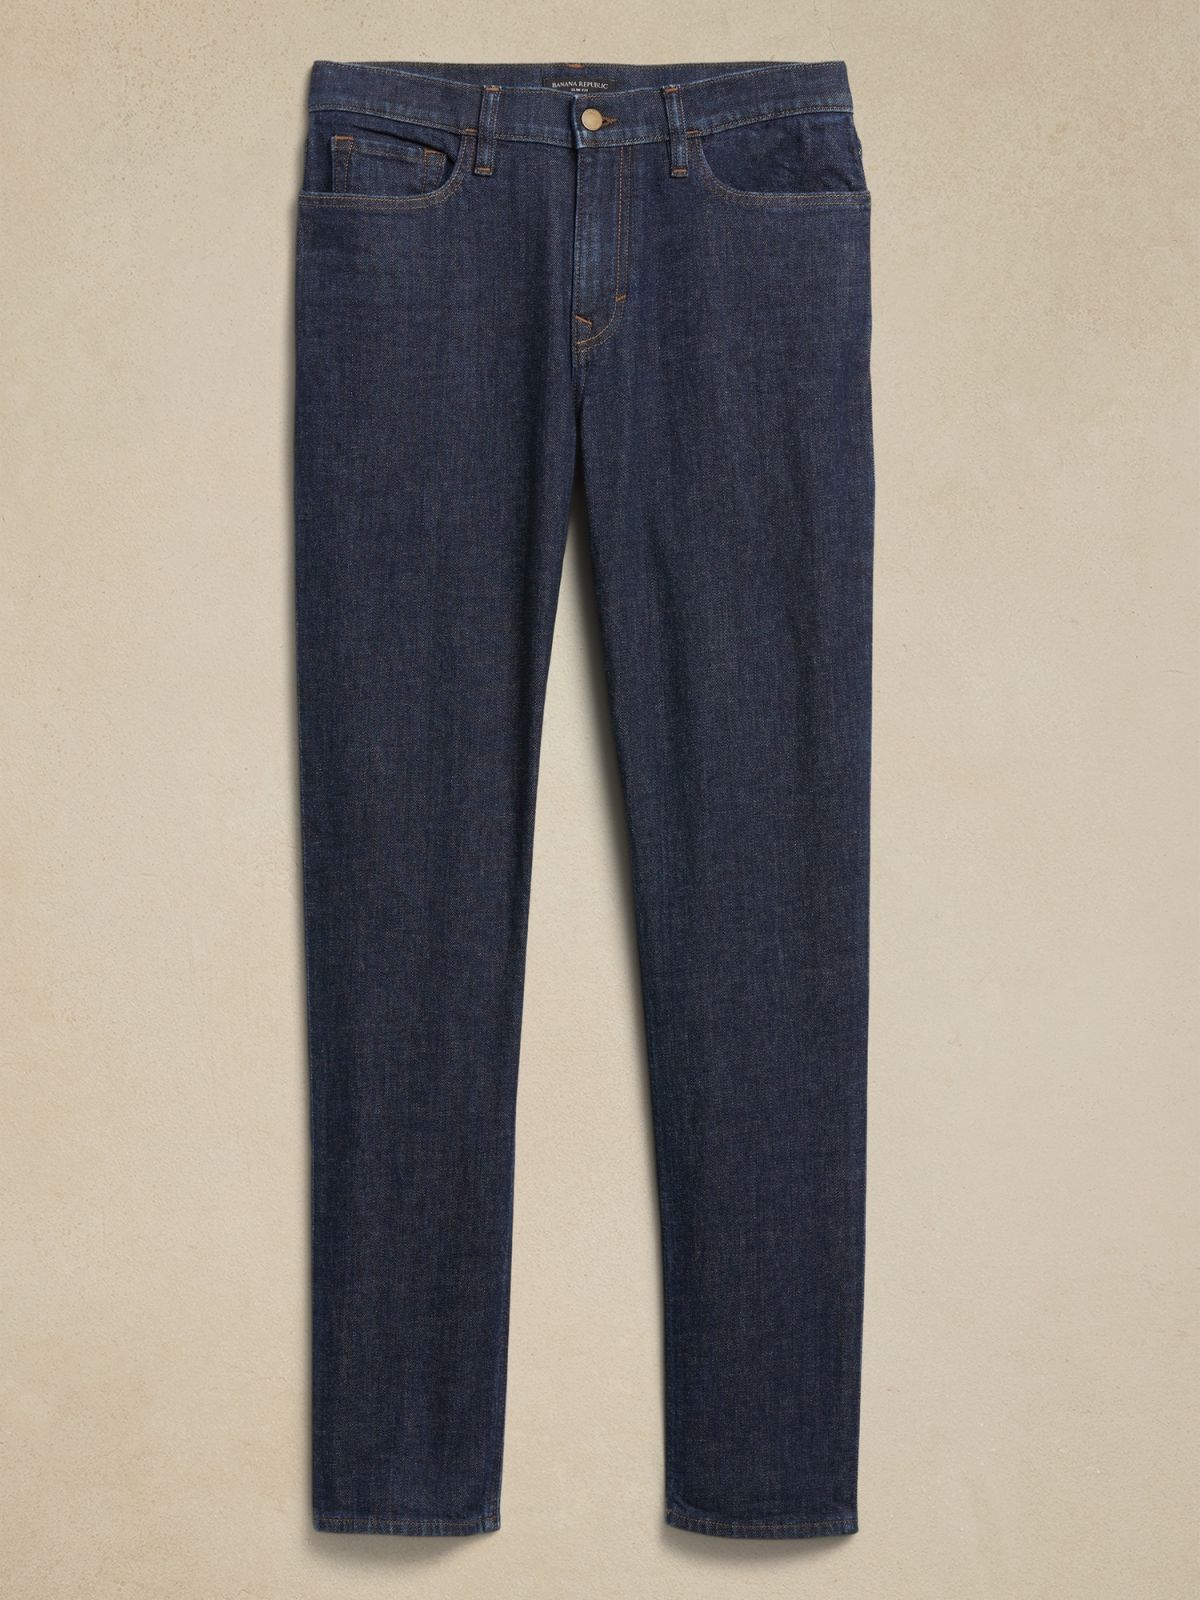  ג'ינס ארוך בגזרת Slim של BANANA REPUBLIC